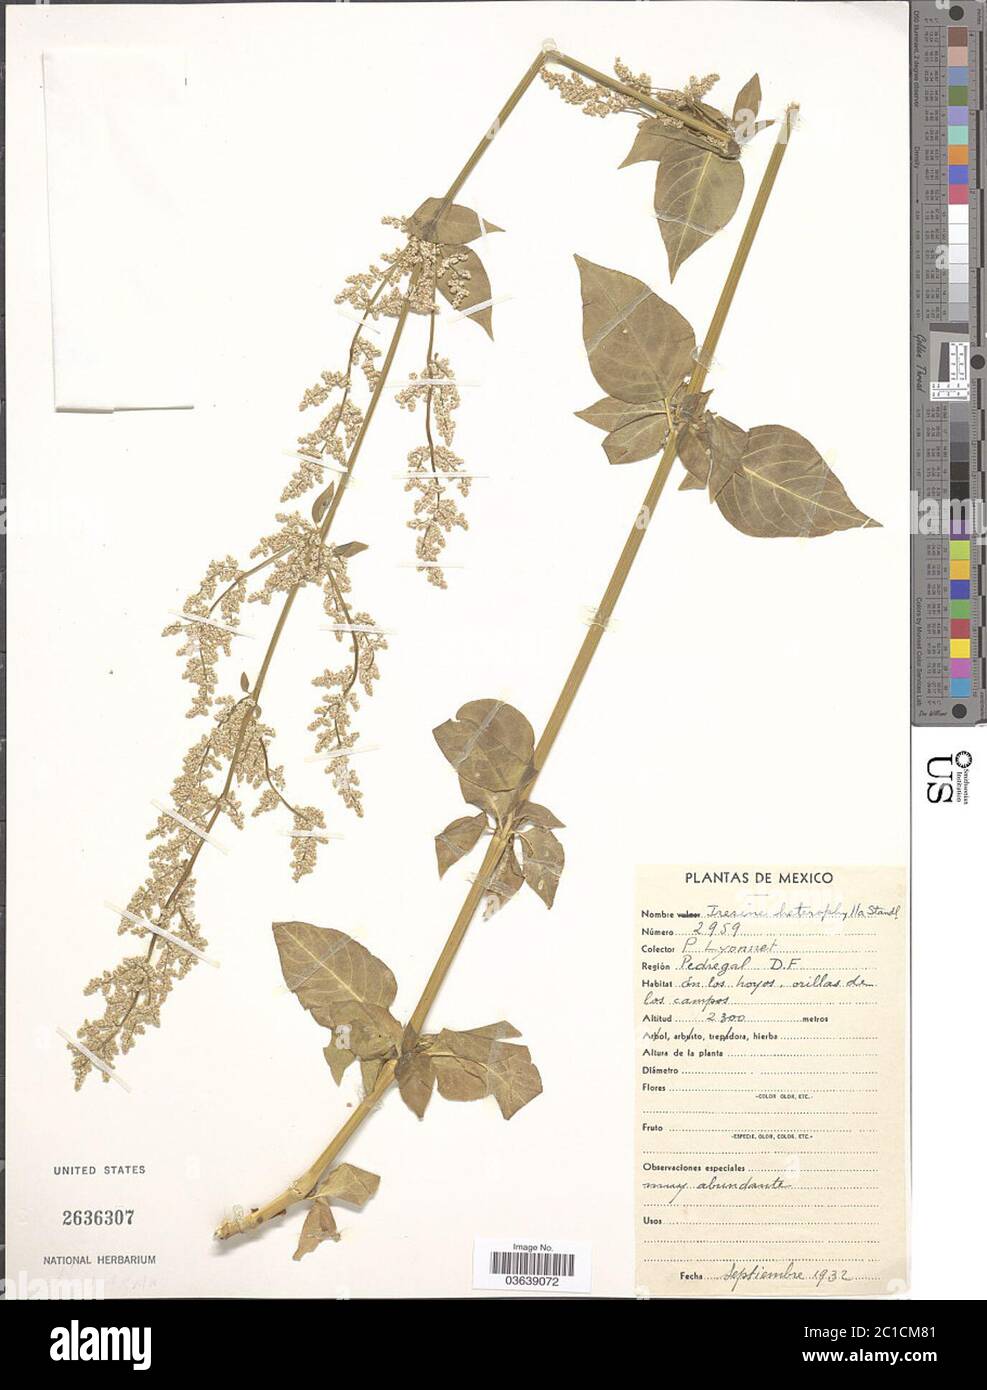 Iresine heterophylla Standl Iresine heterophylla Standl. Stock Photo